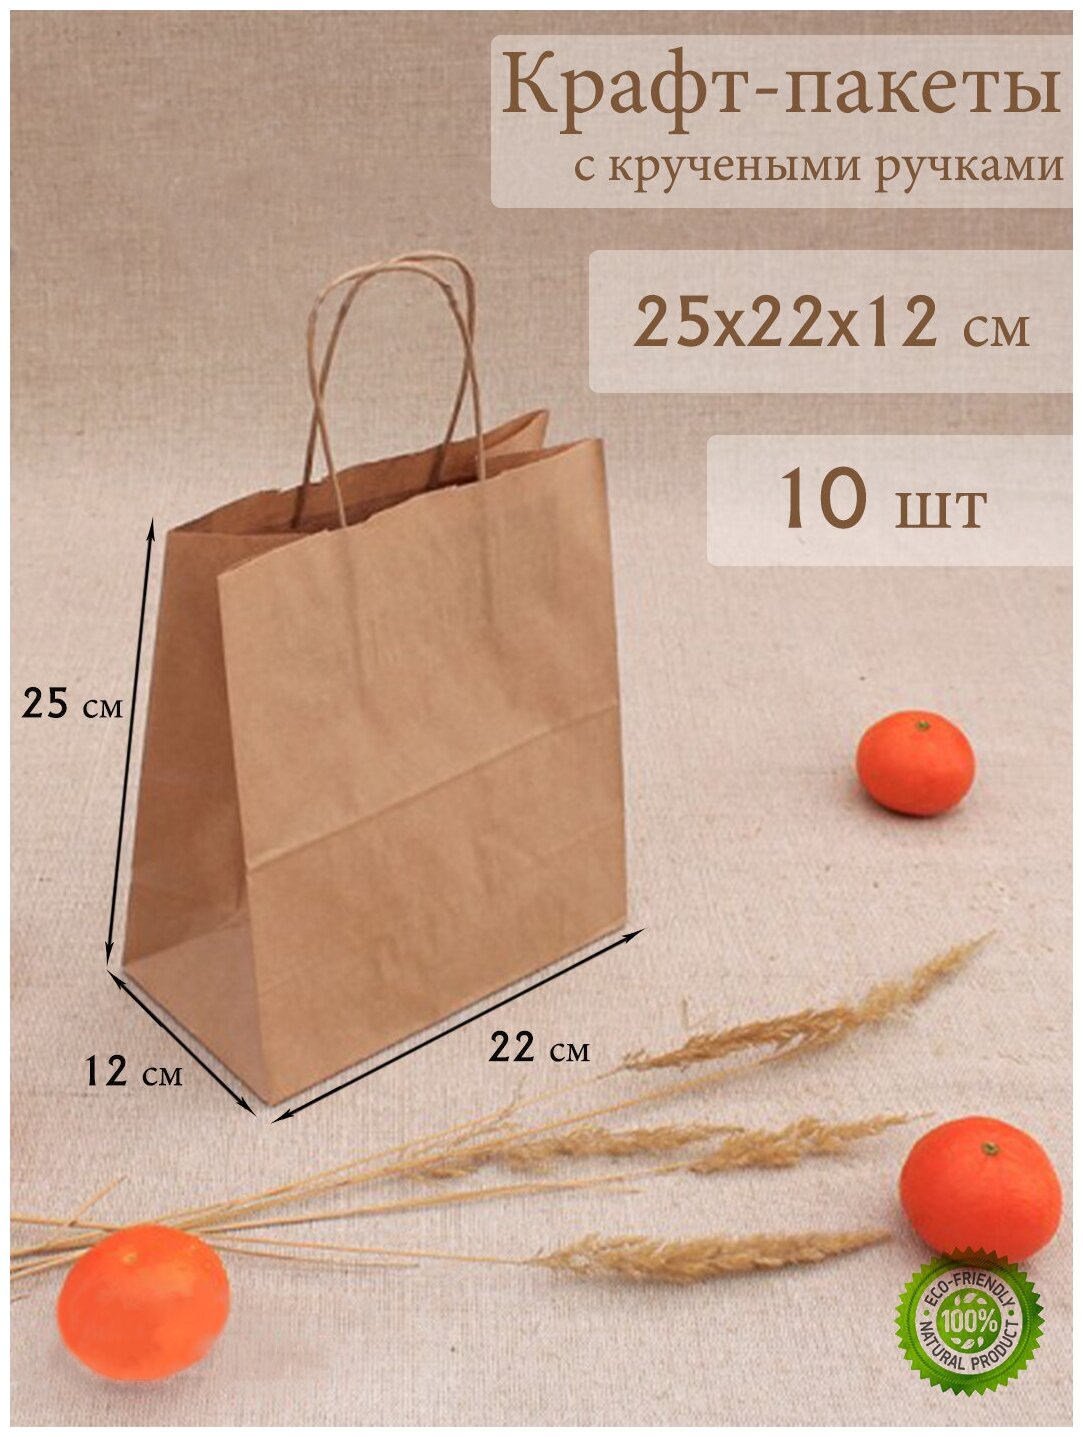 Крафт пакет бумажный с ручками 25*22*12см - 10 штук, крафтовые пакеты упаковочные, подарочные, пищевые